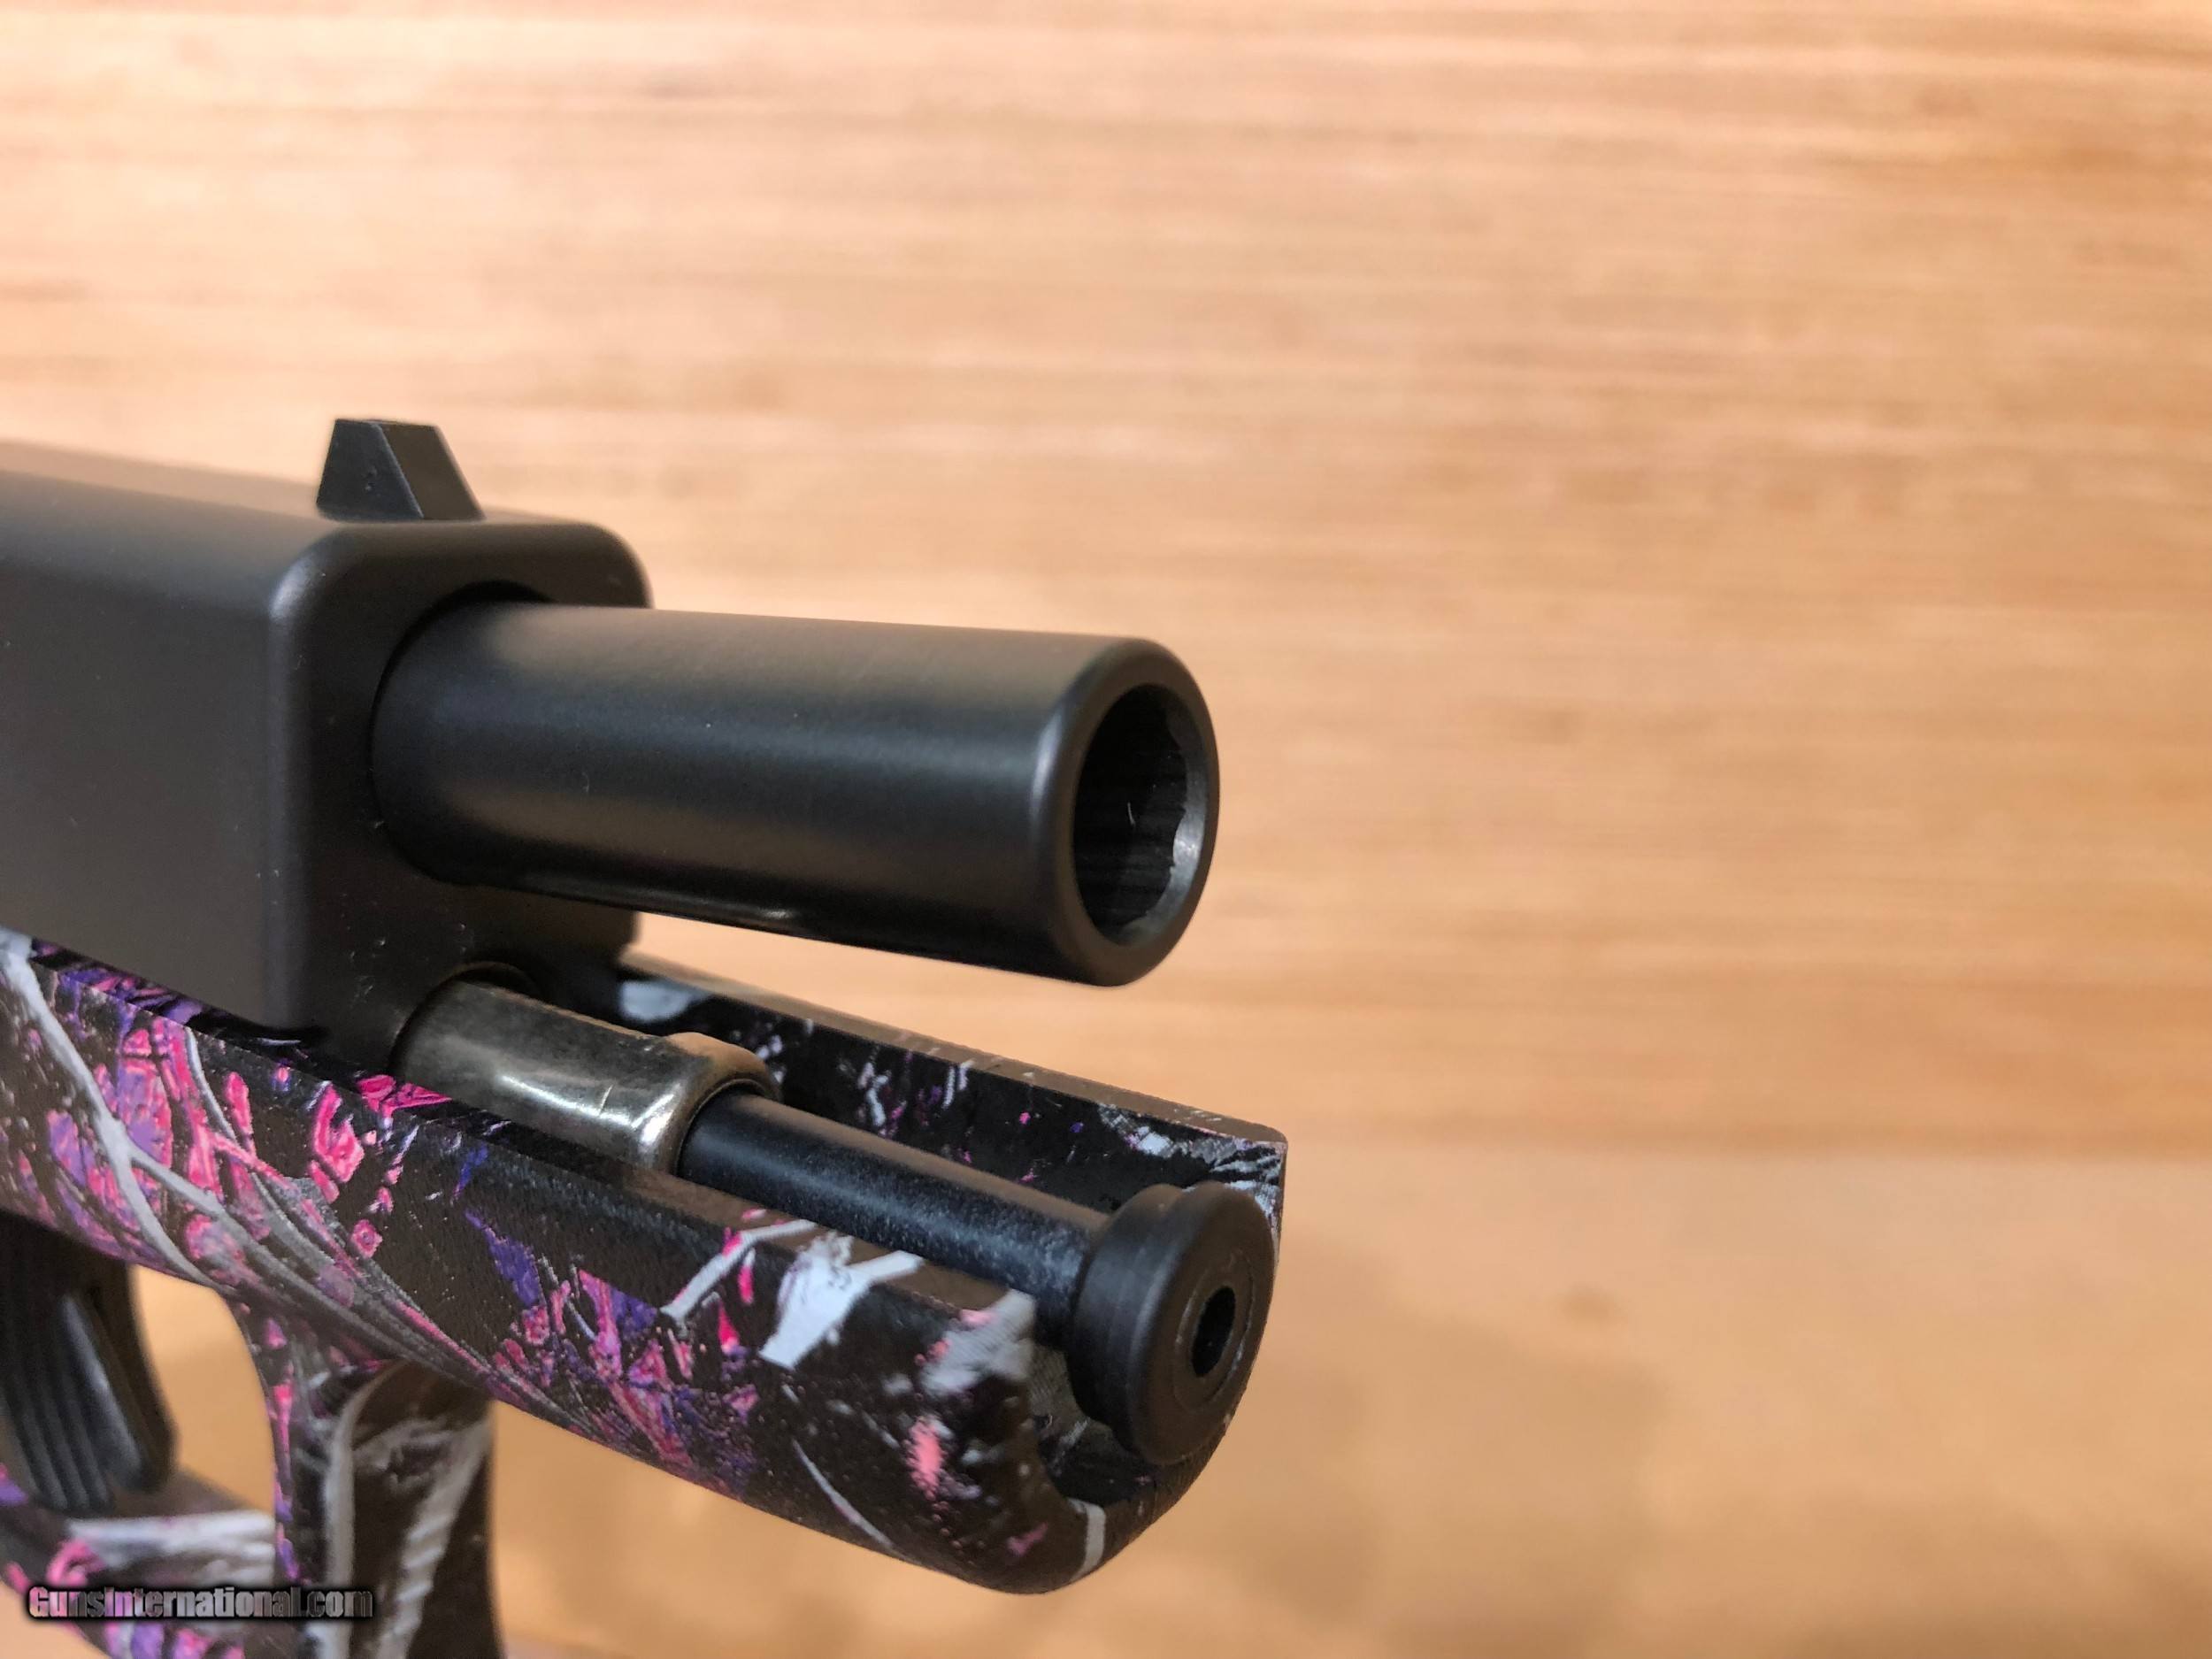 Glock 43 Pink Splinter Camo by PIET VAN WYK DE VRIES